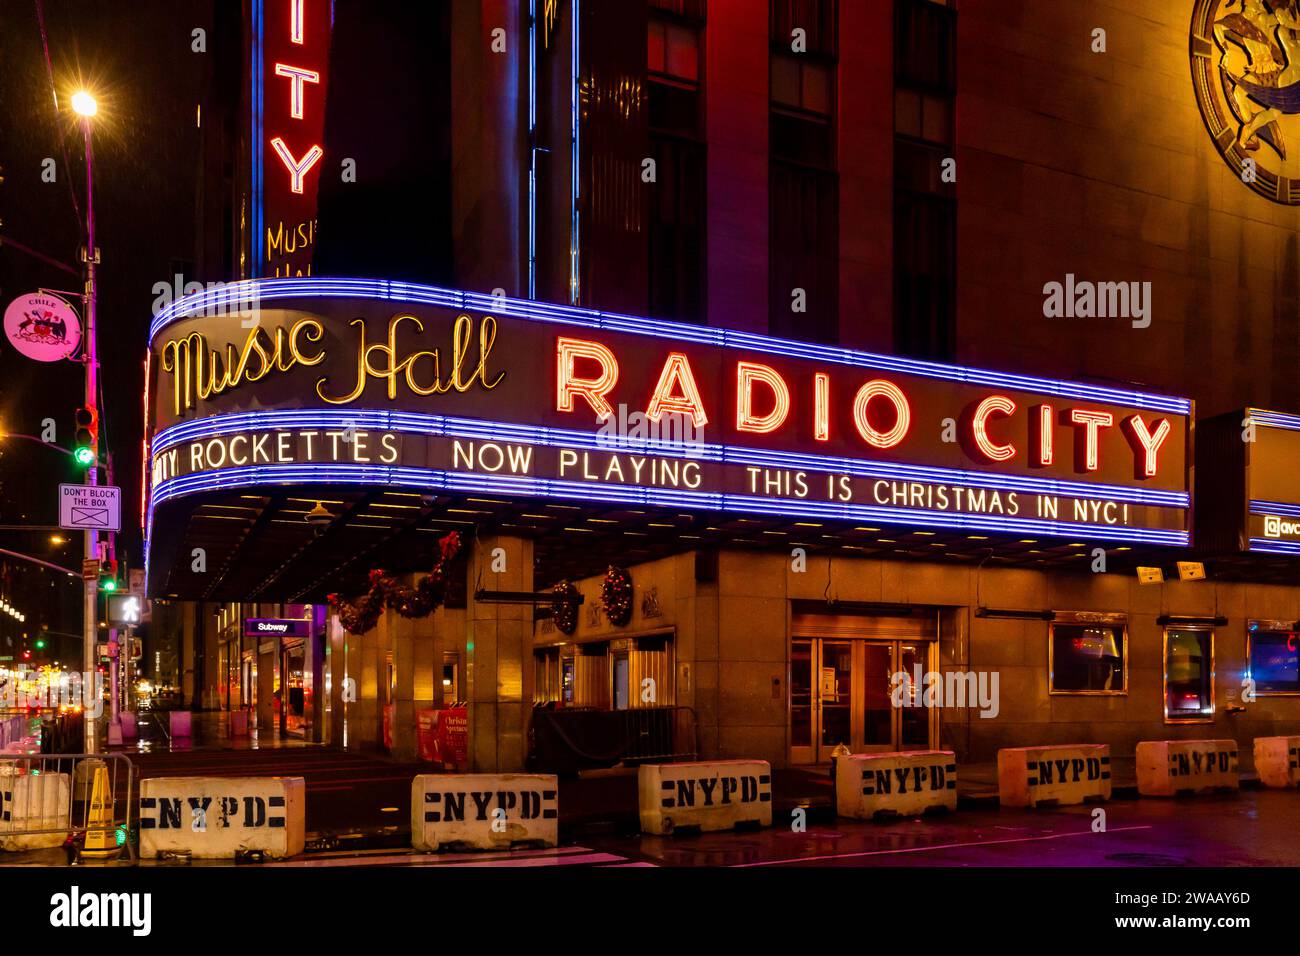 Le radio City Music Hall est situé dans le quartier de Manhattan à New York et près du Rockefeller Center. Banque D'Images